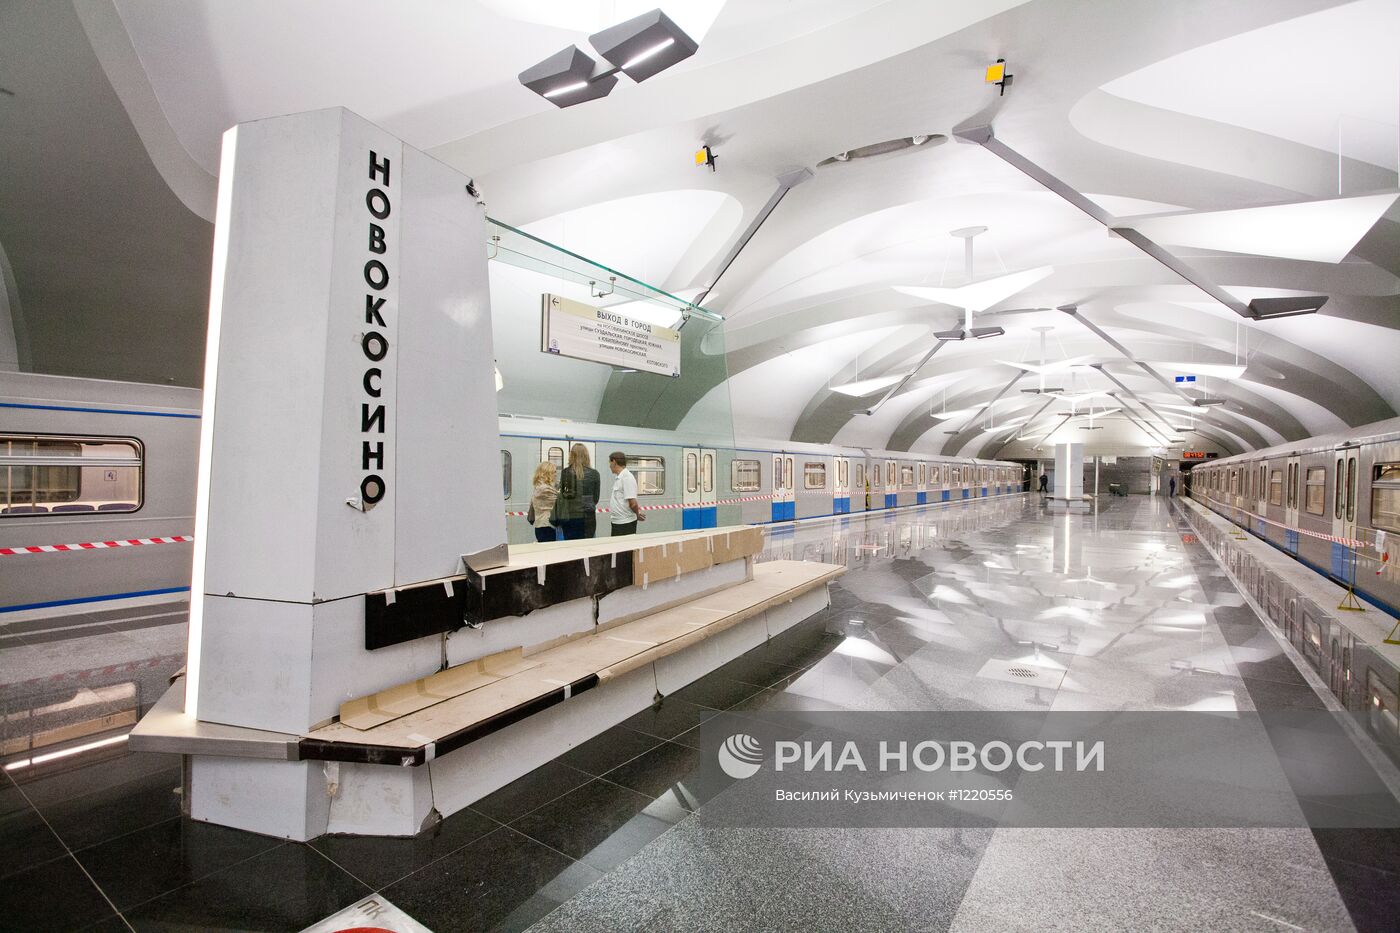 Подготовка к открытию станции метро "Новокосино" в Москве